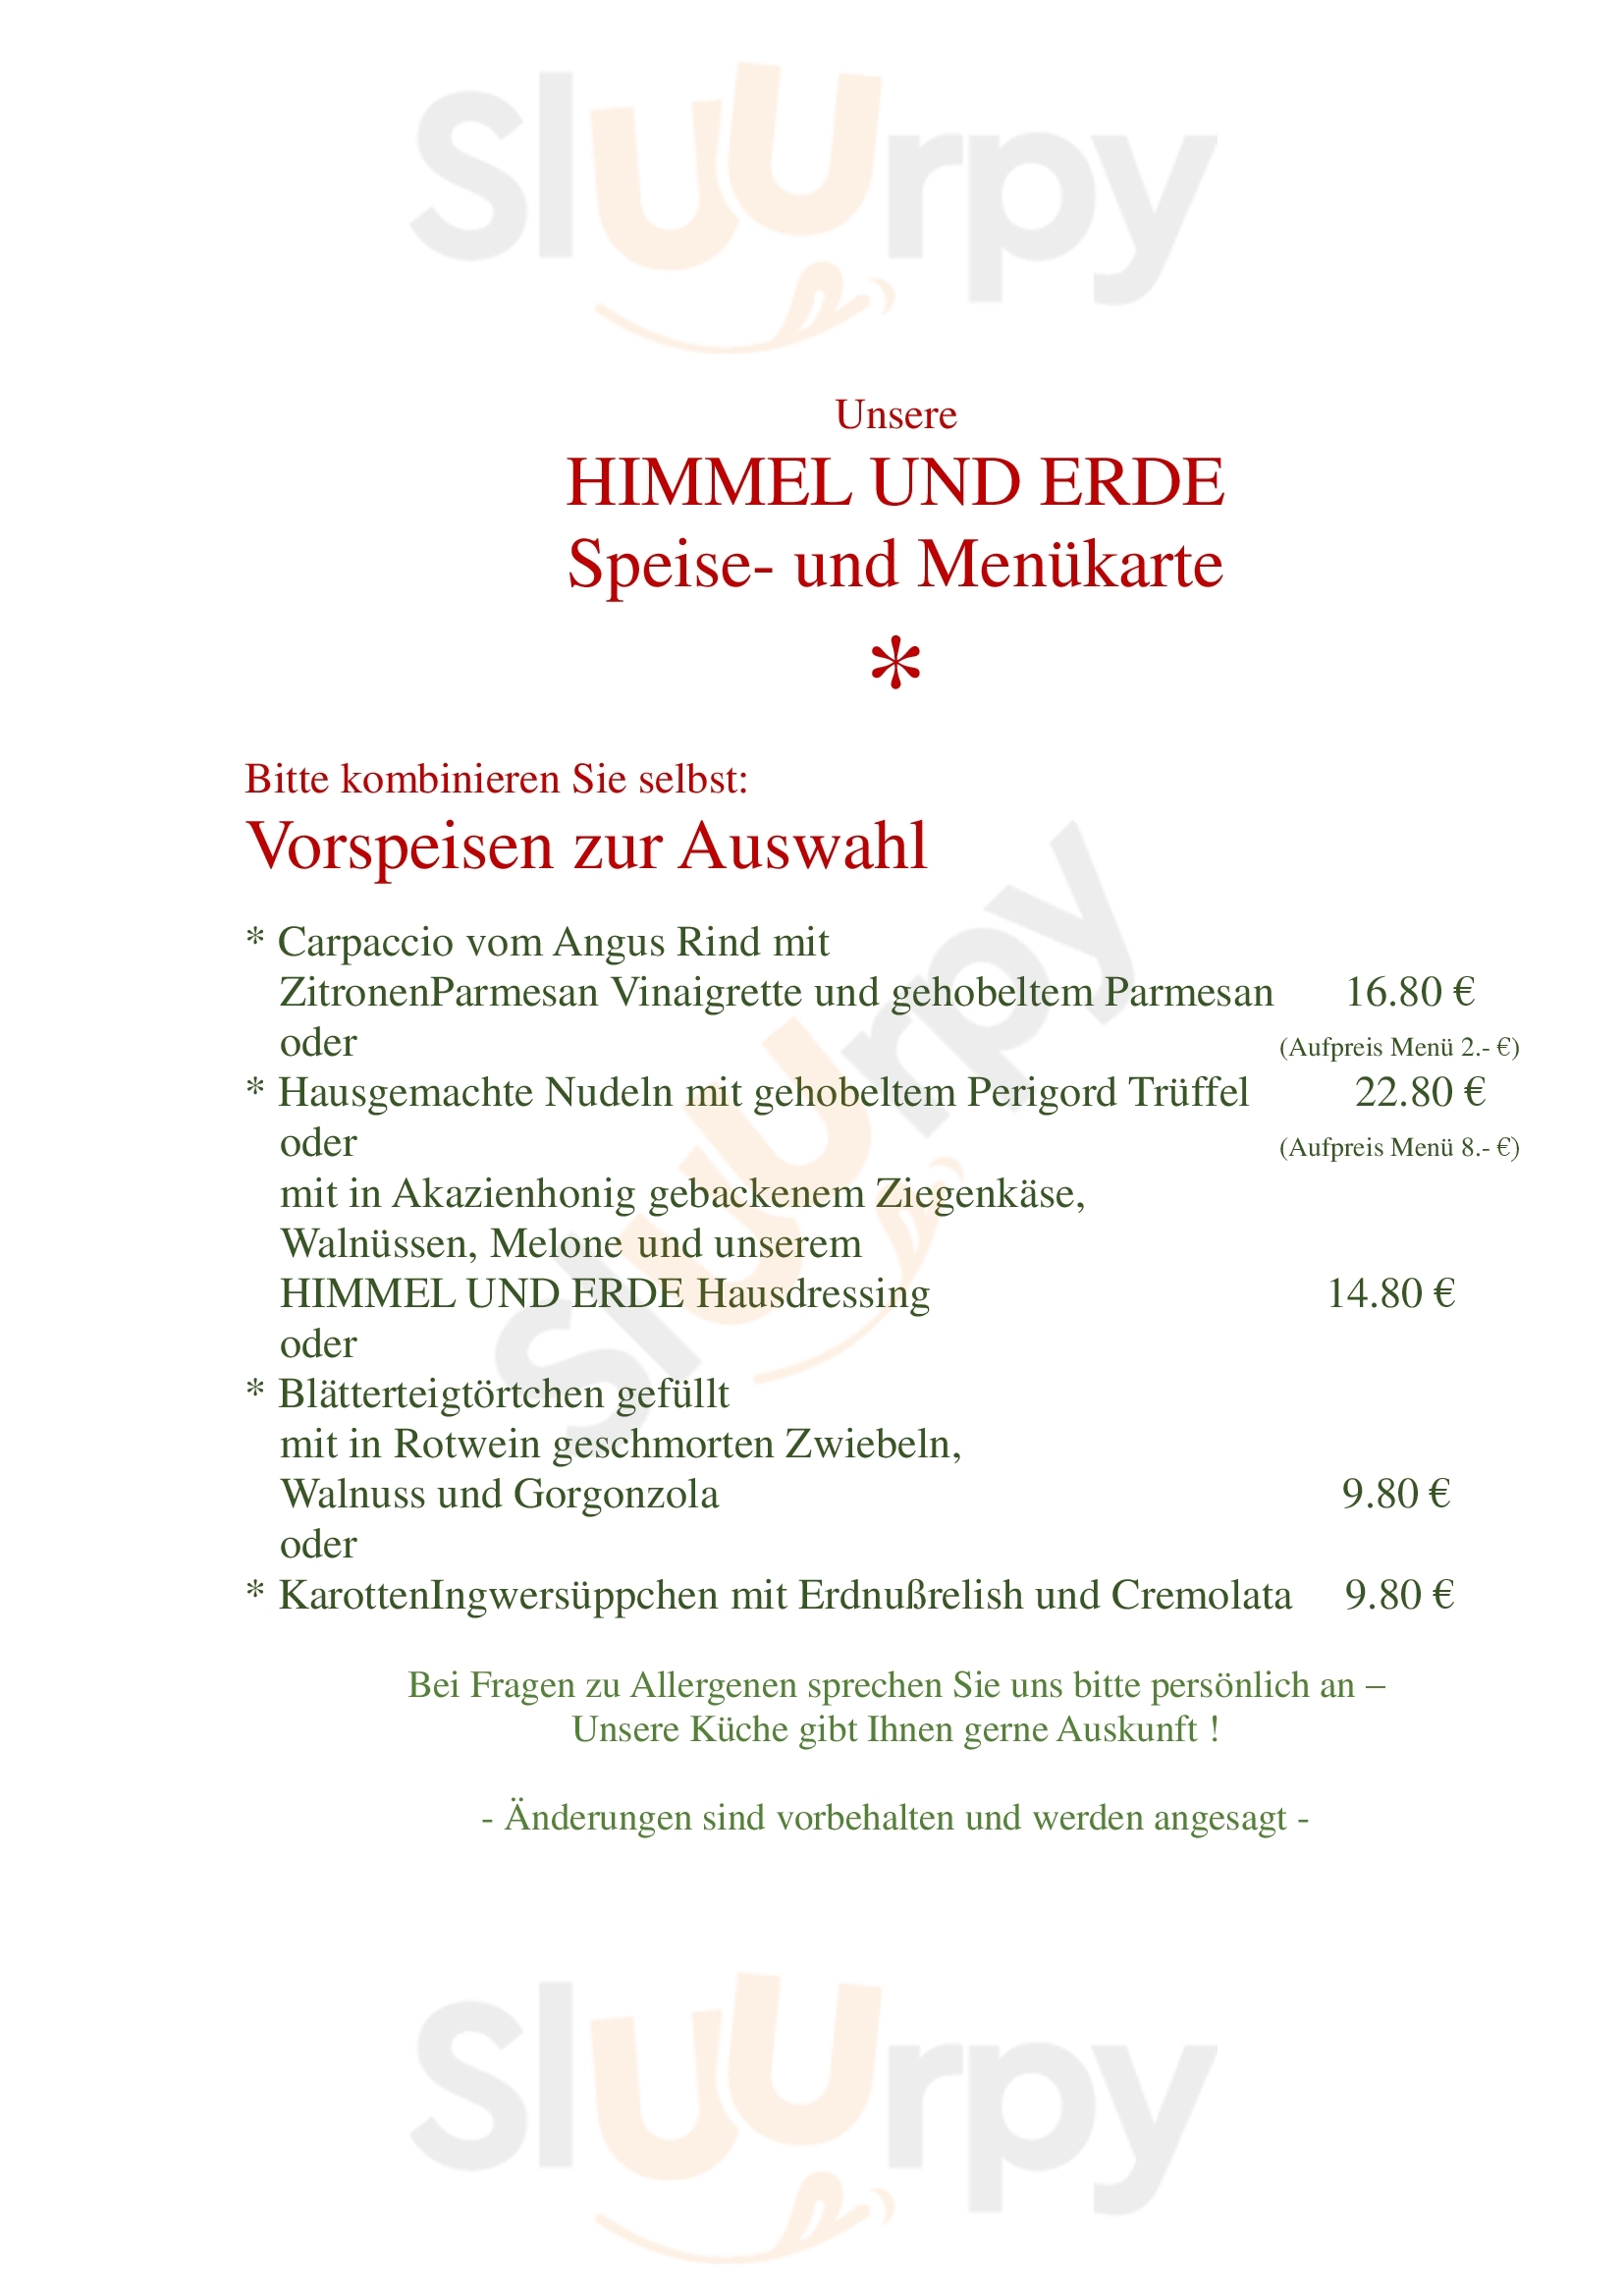 Restaurant Himmel Und Erde Limburg Menu - 1